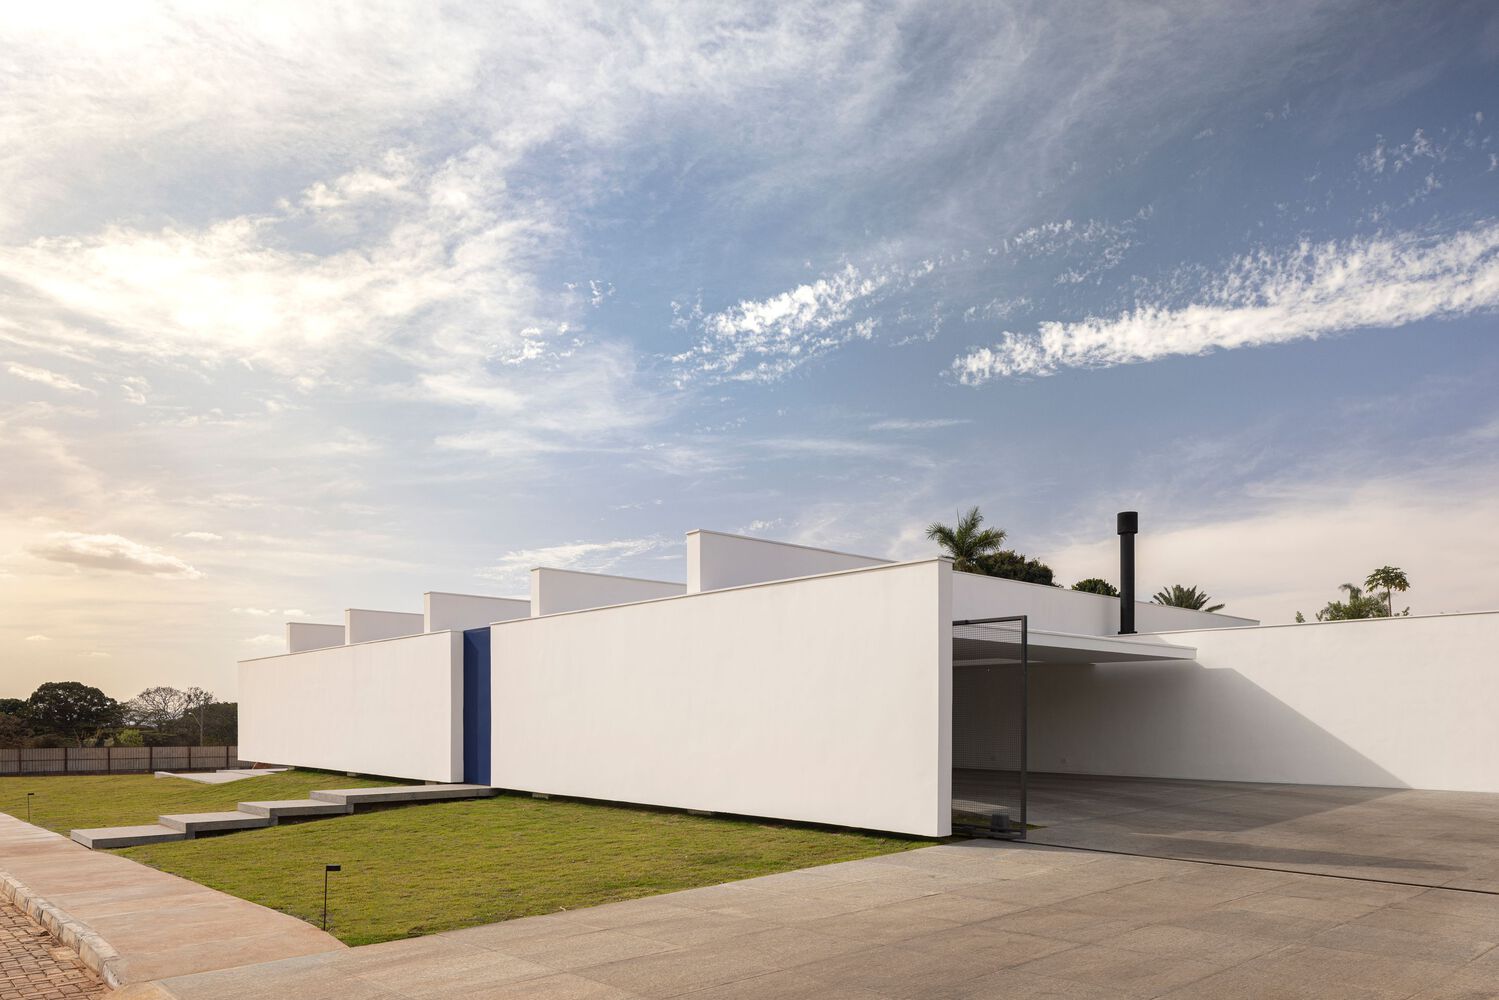 別墅設計,住宅設計案例,BLOCO Arquitetos,巴西,國外別墅設計案例,600㎡,景觀別墅,畫廊住宅